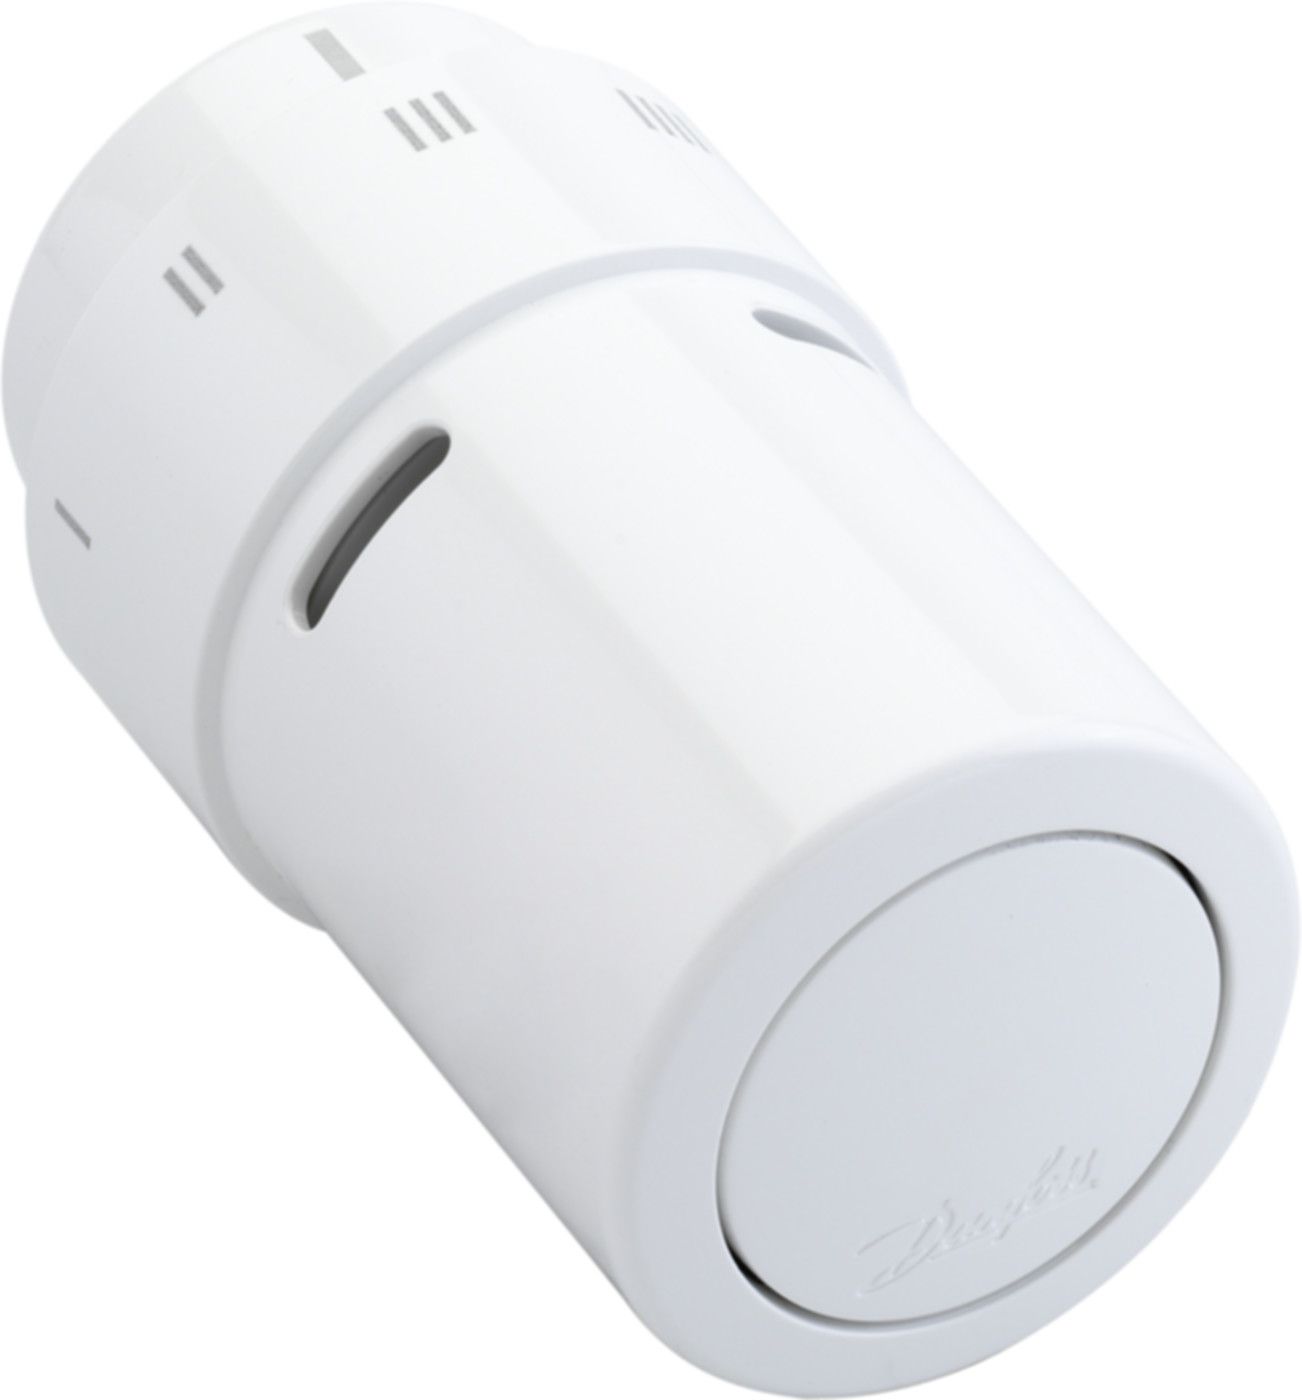 Design-Thermostatfühler Fühler eingeb. RAX RAL 9016 Weiss 013G6070 - Danfoss Programm